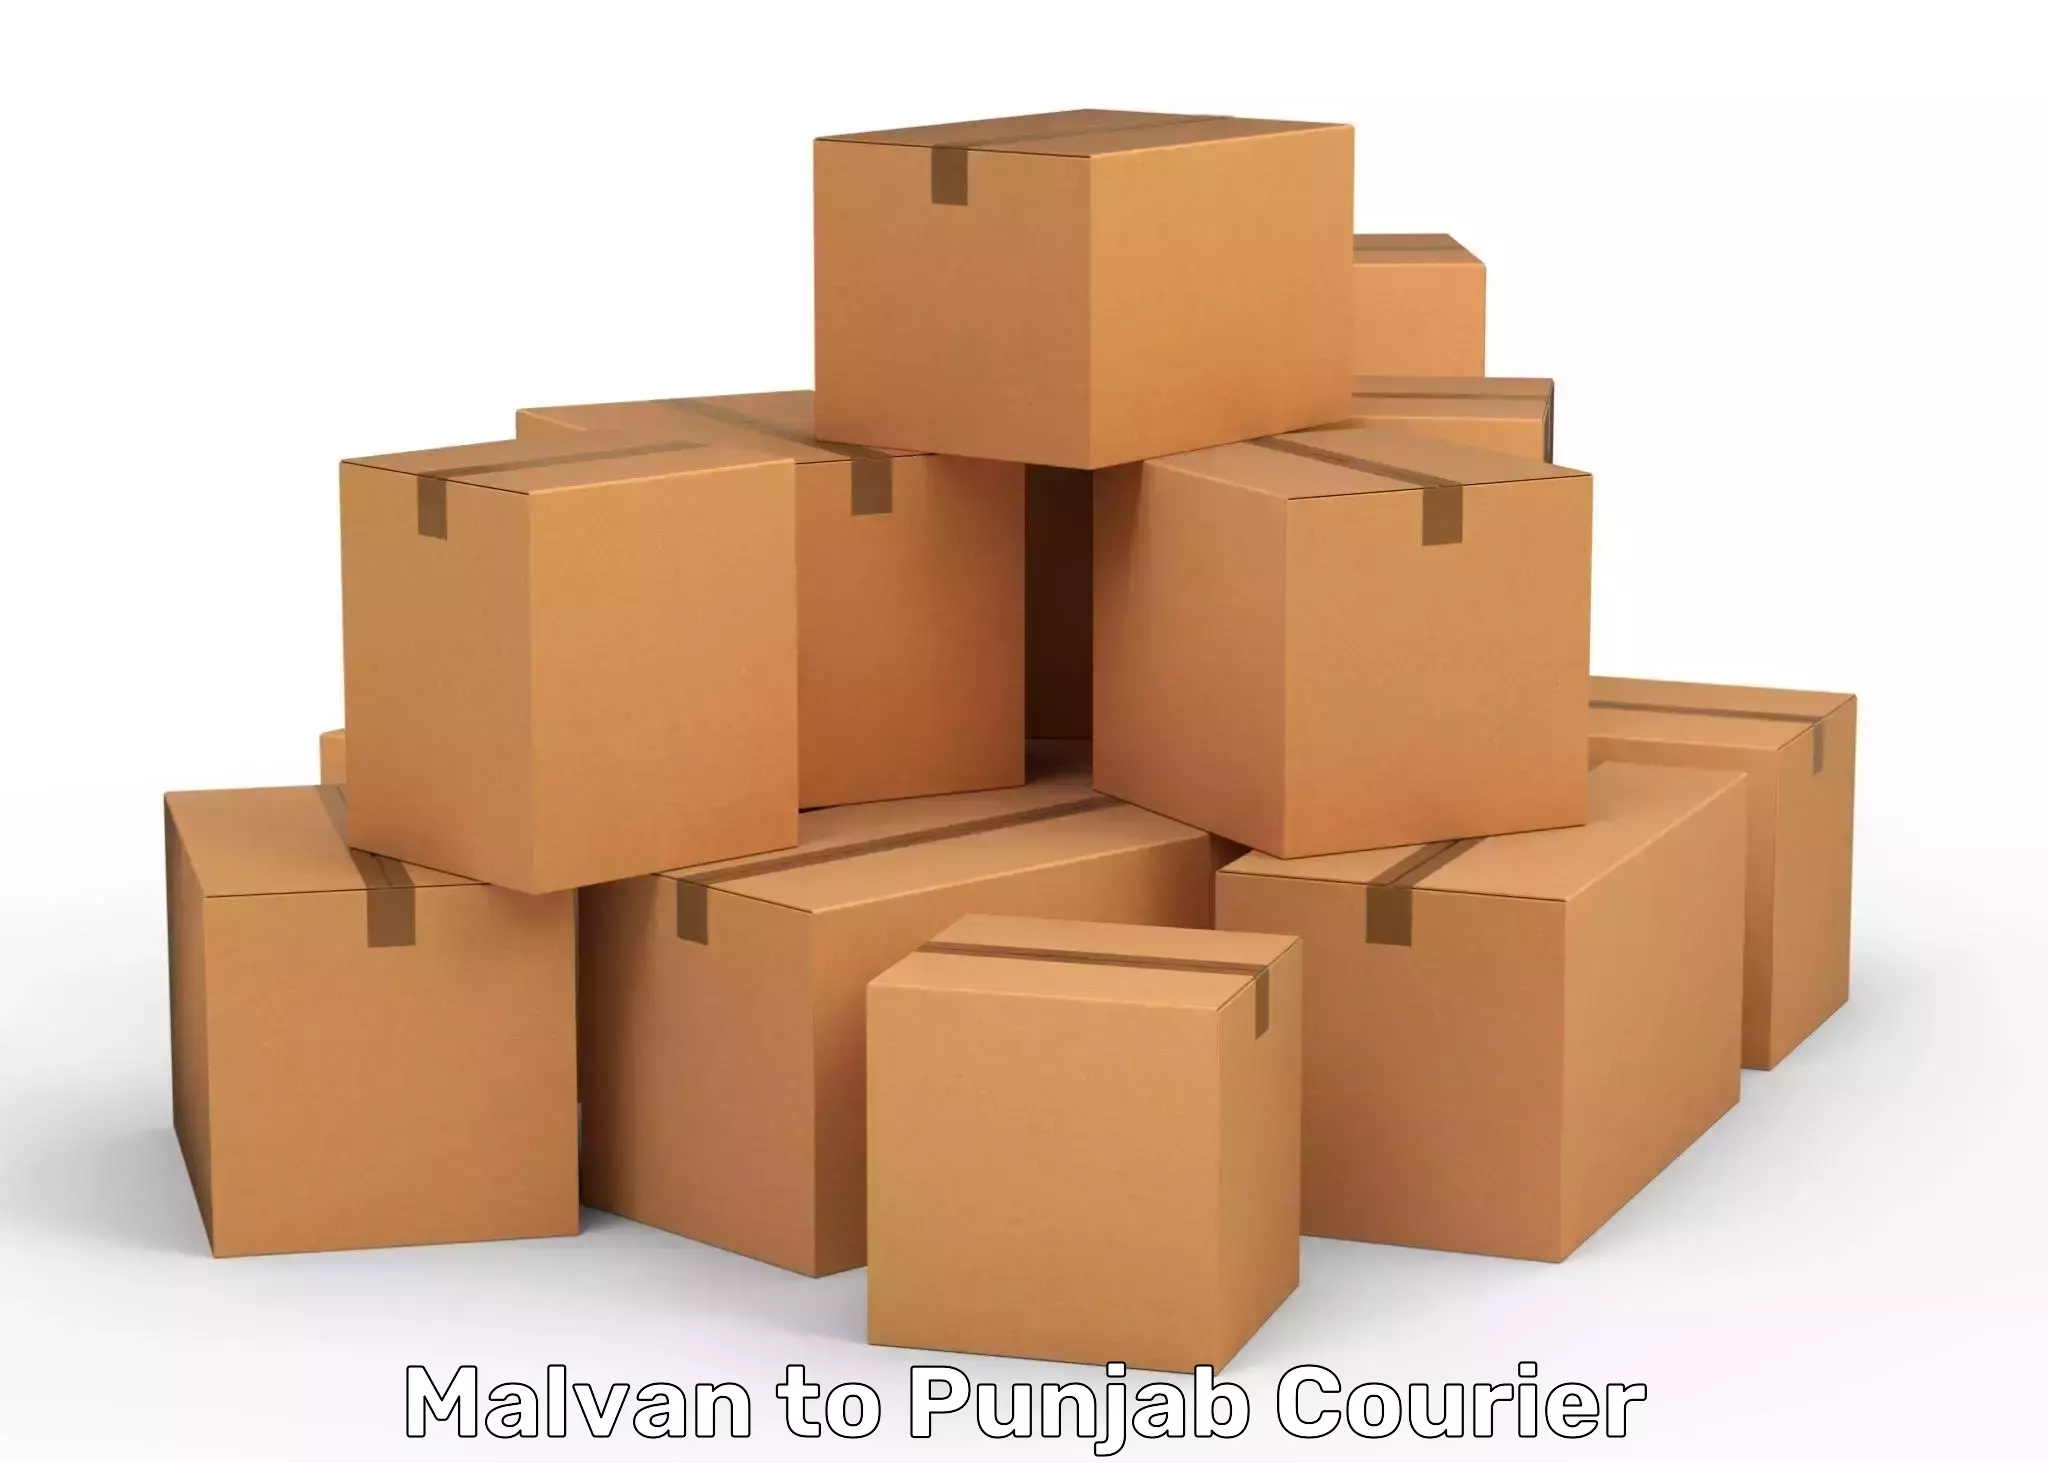 International courier rates Malvan to Punjab